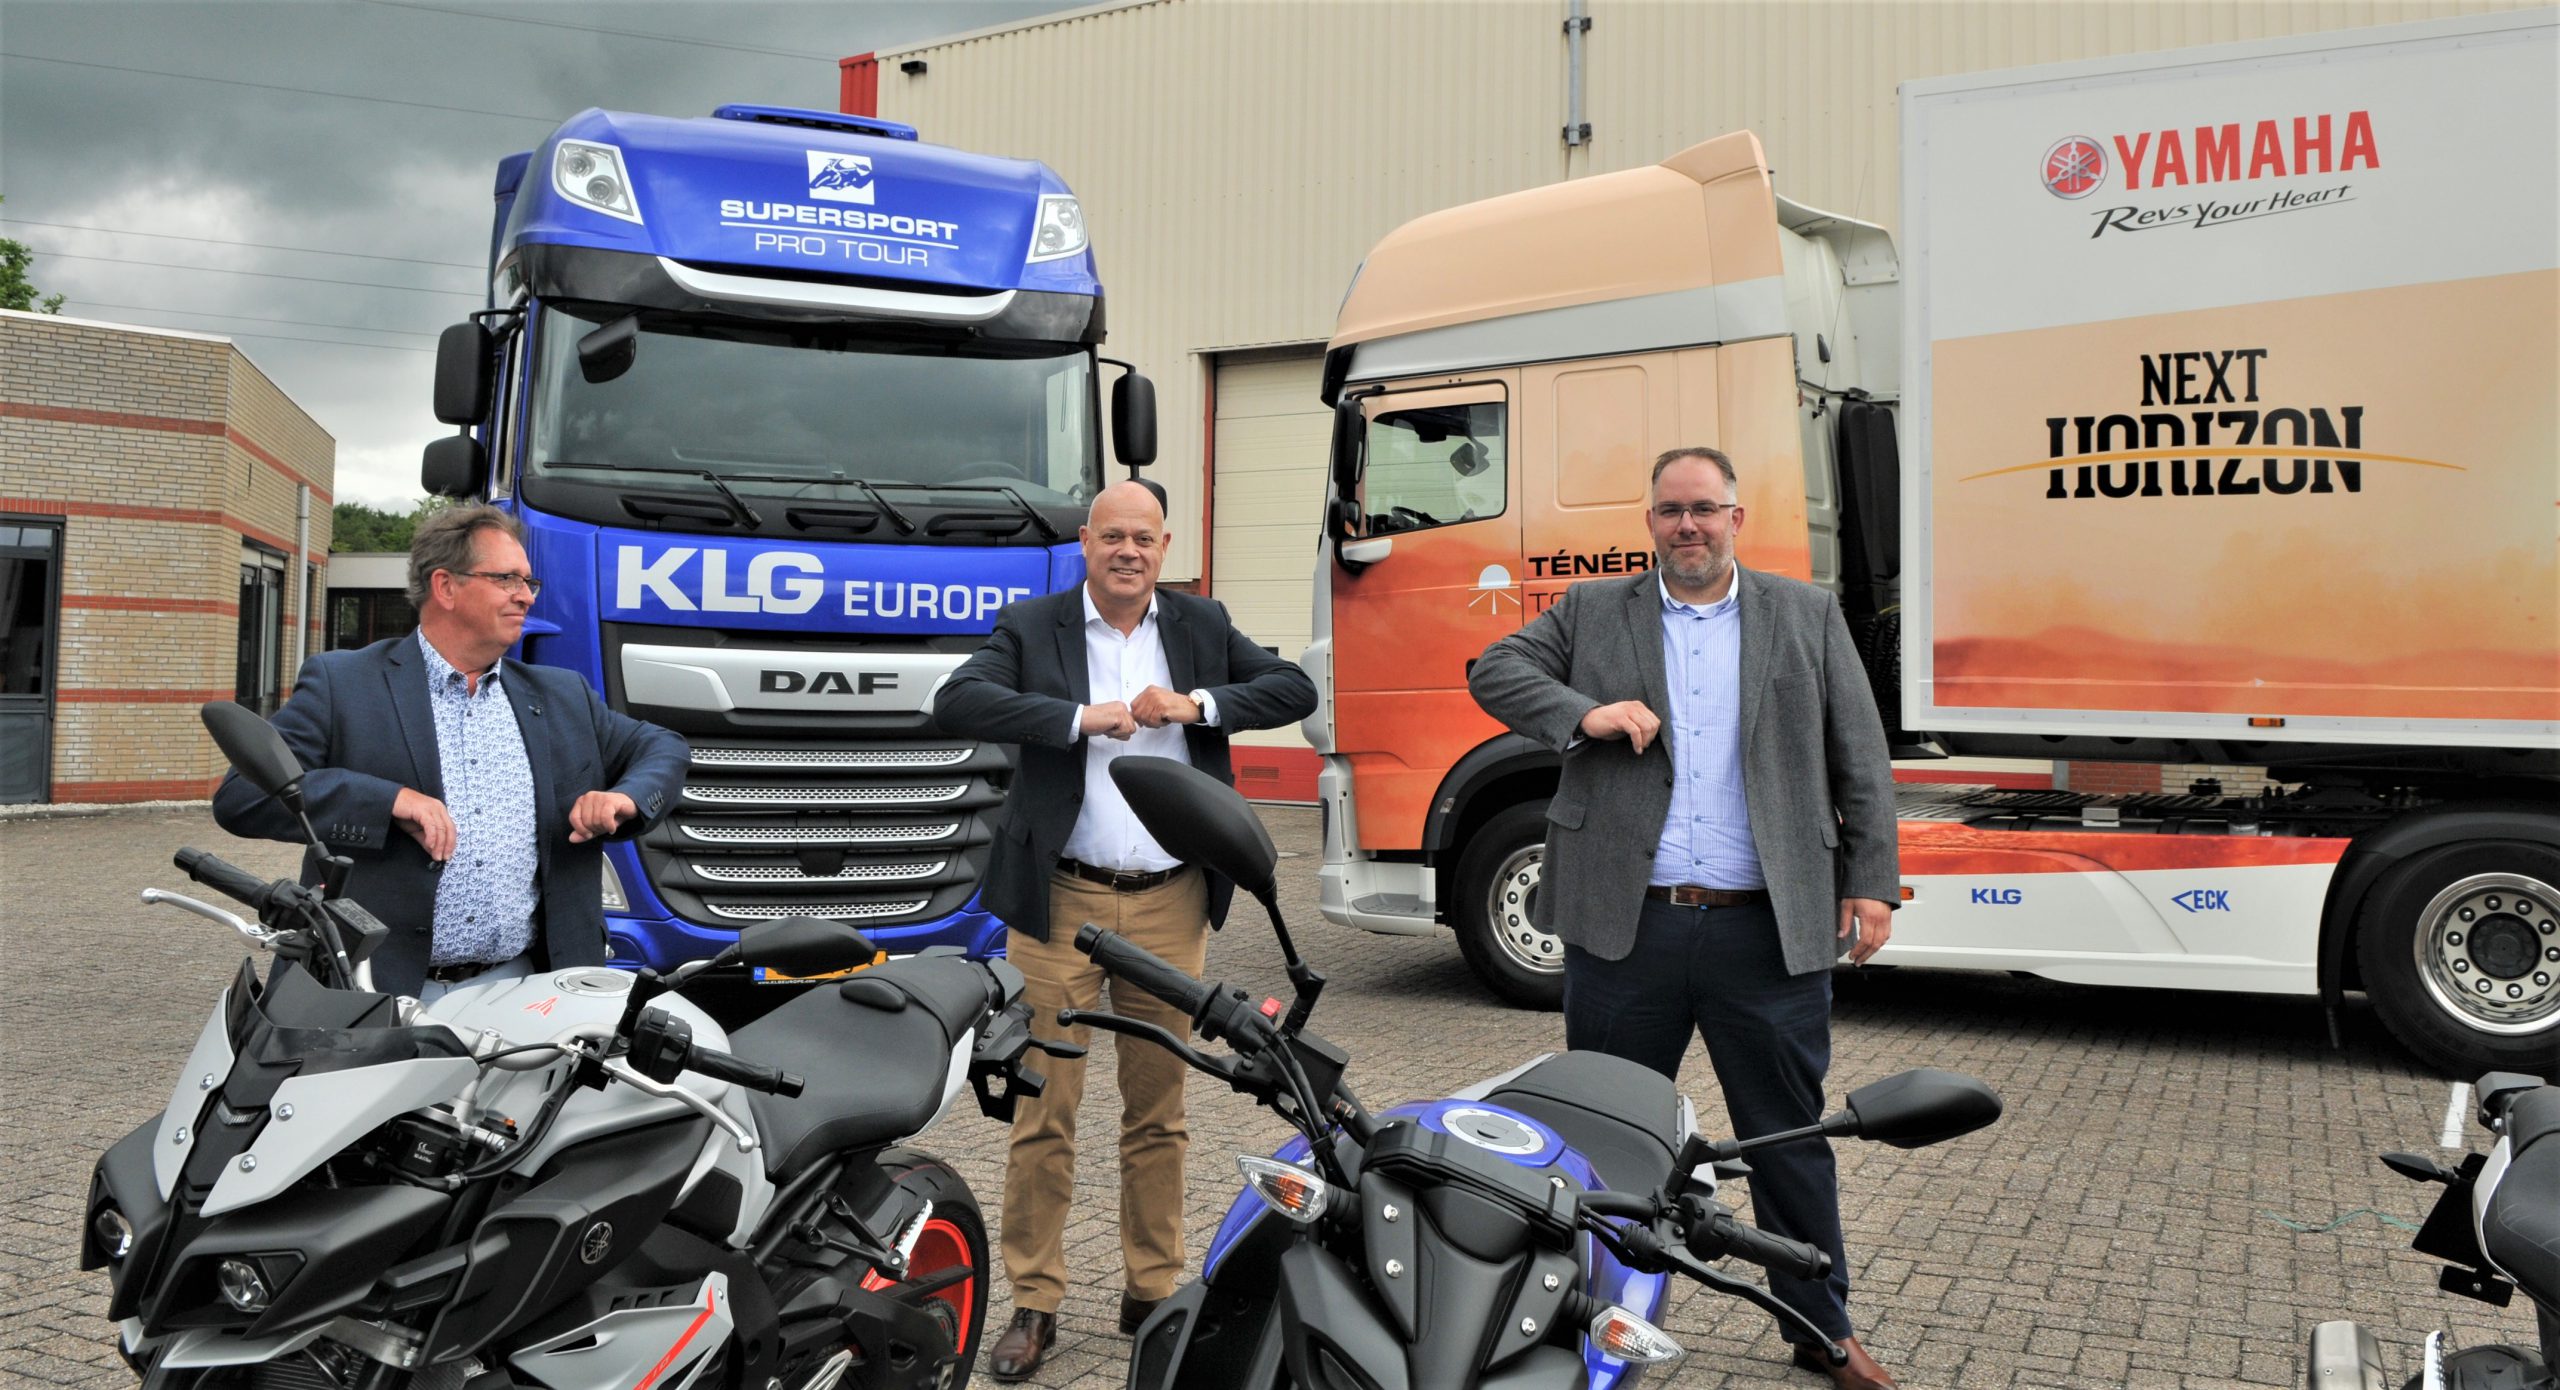 La partnershihp fra Yamaha e KLG Europe ha portato Van Eck alla fornitura dei trailer per il tour